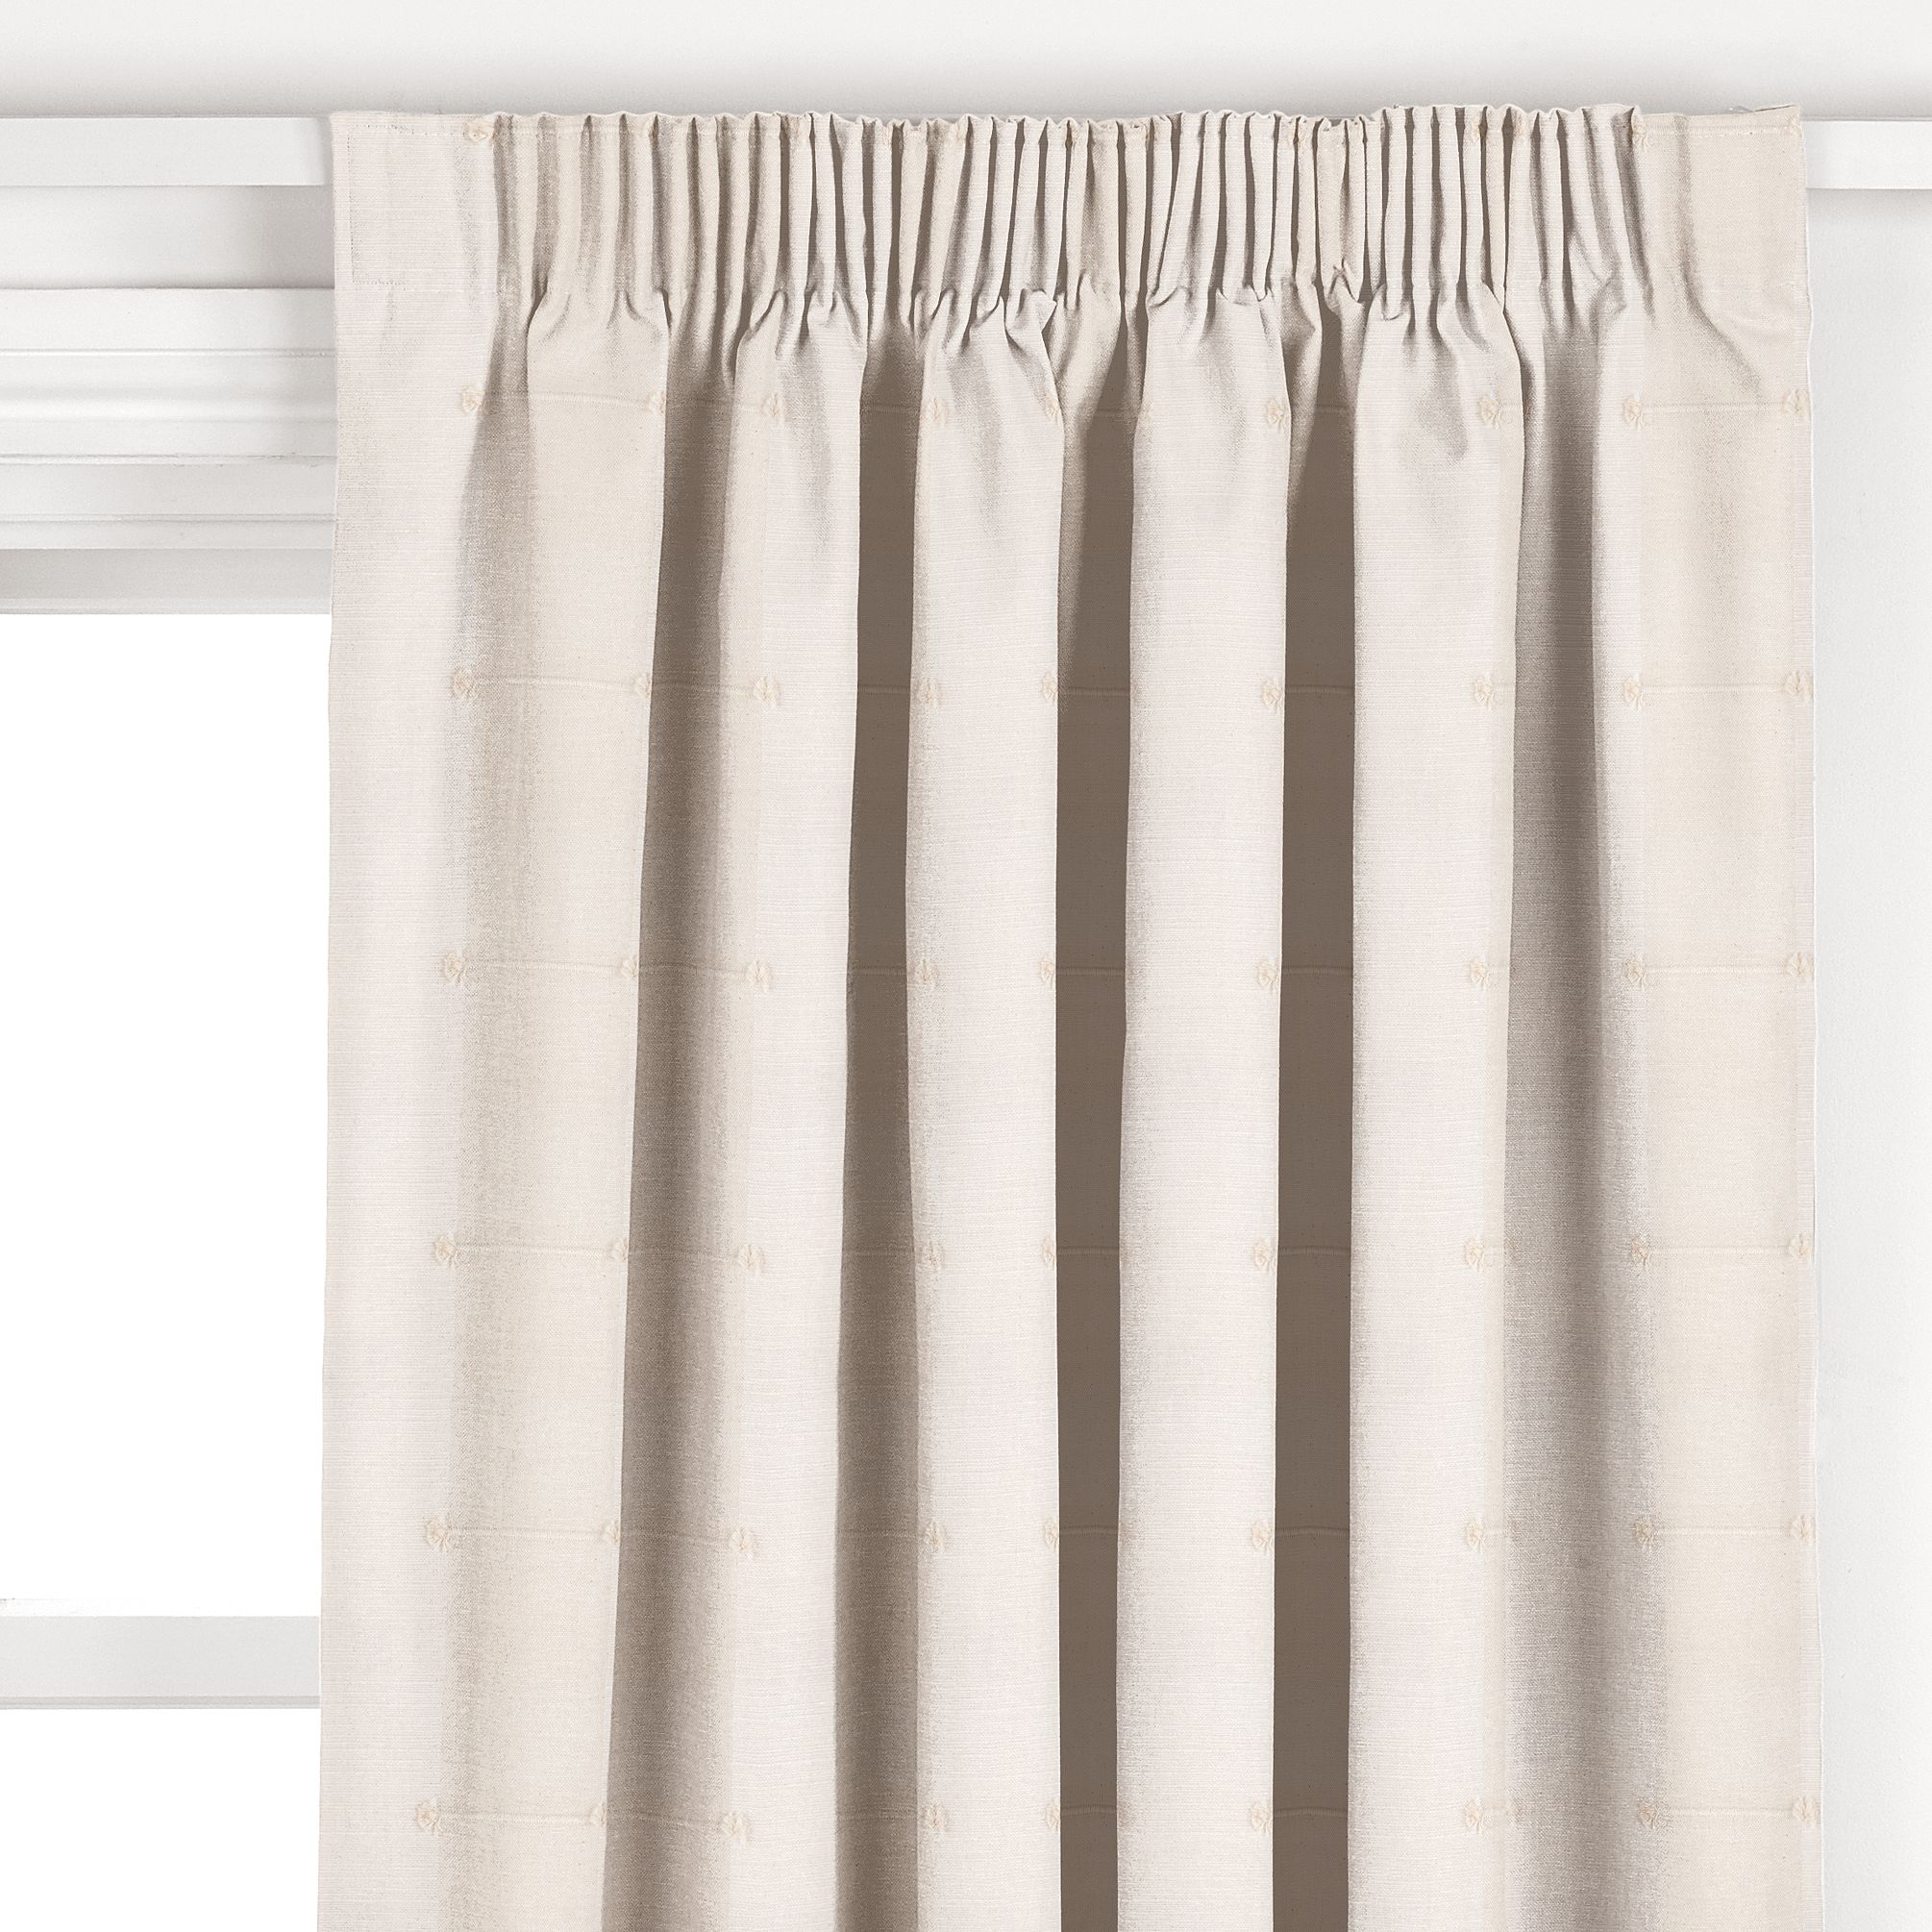 Sierra Pencil Pleat Curtains, Natural